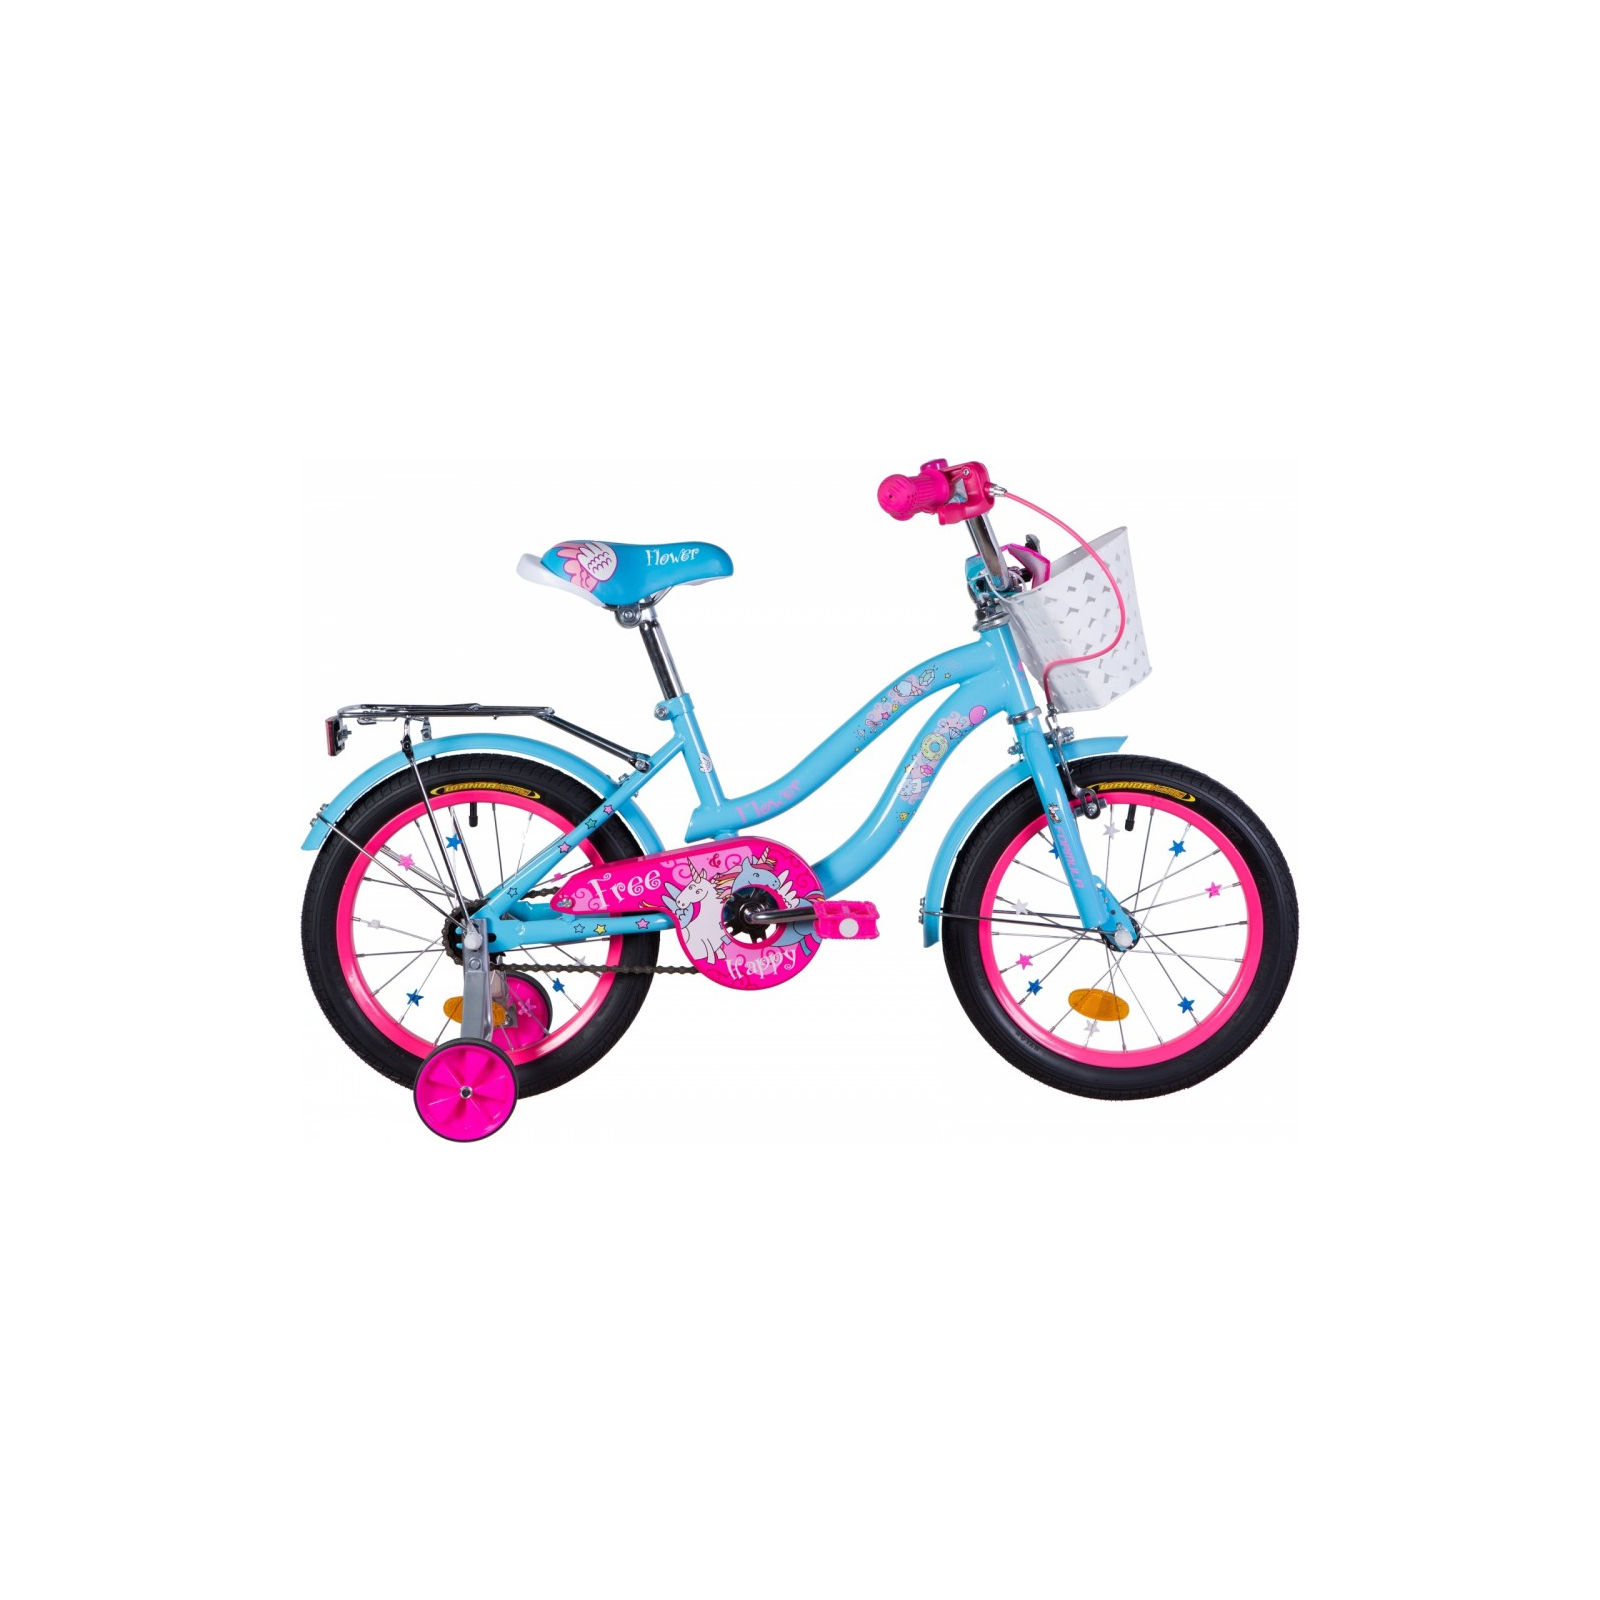 Дитячий велосипед Formula 16" FLOWER рама-10" St 2020 голубой с багажником (OPS-FRK-16-113)